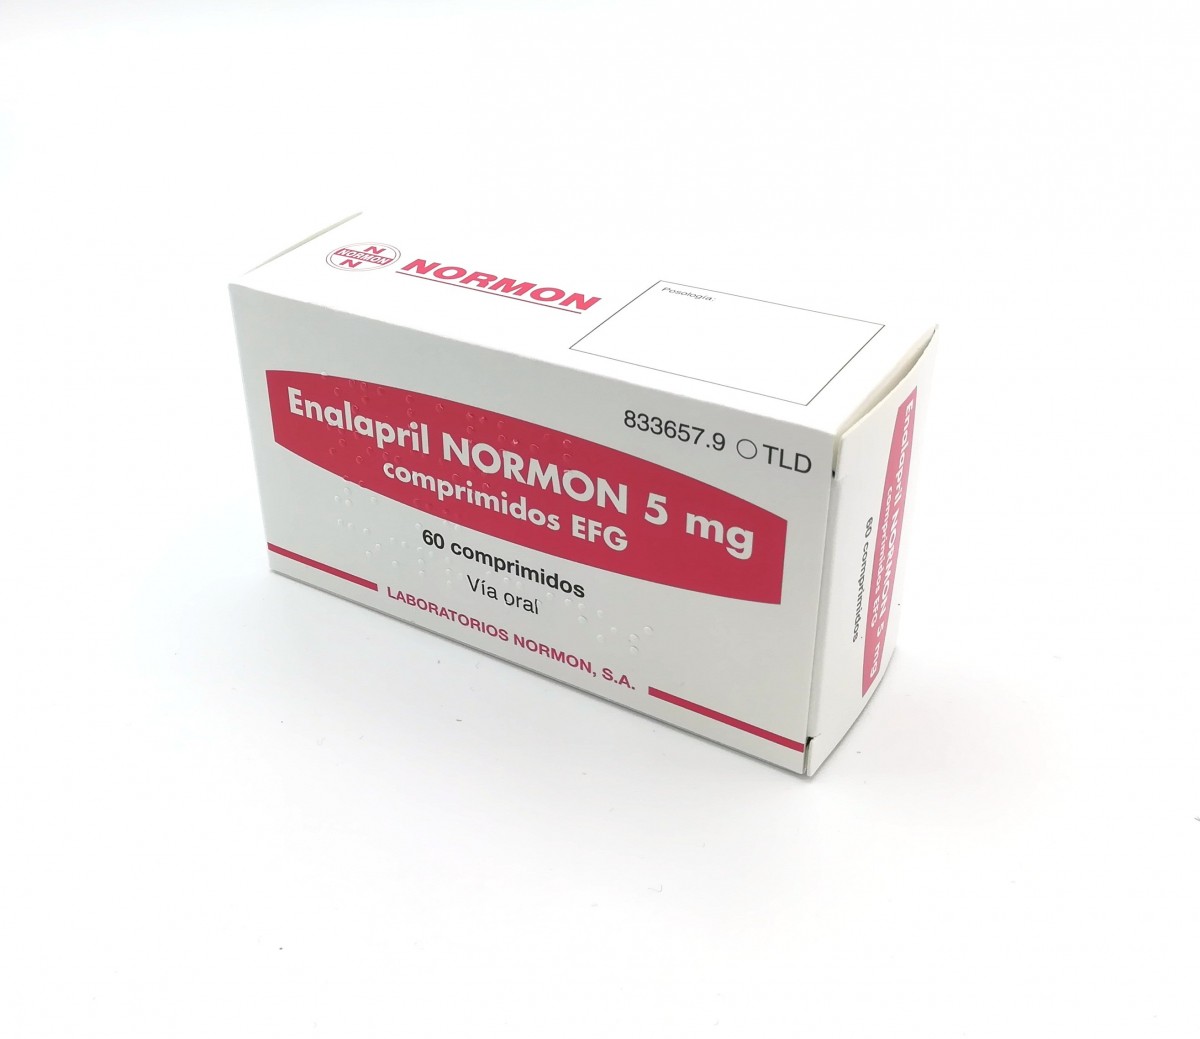 ENALAPRIL NORMON 5 mg  COMPRIMIDOS EFG, 60 comprimidos fotografía del envase.